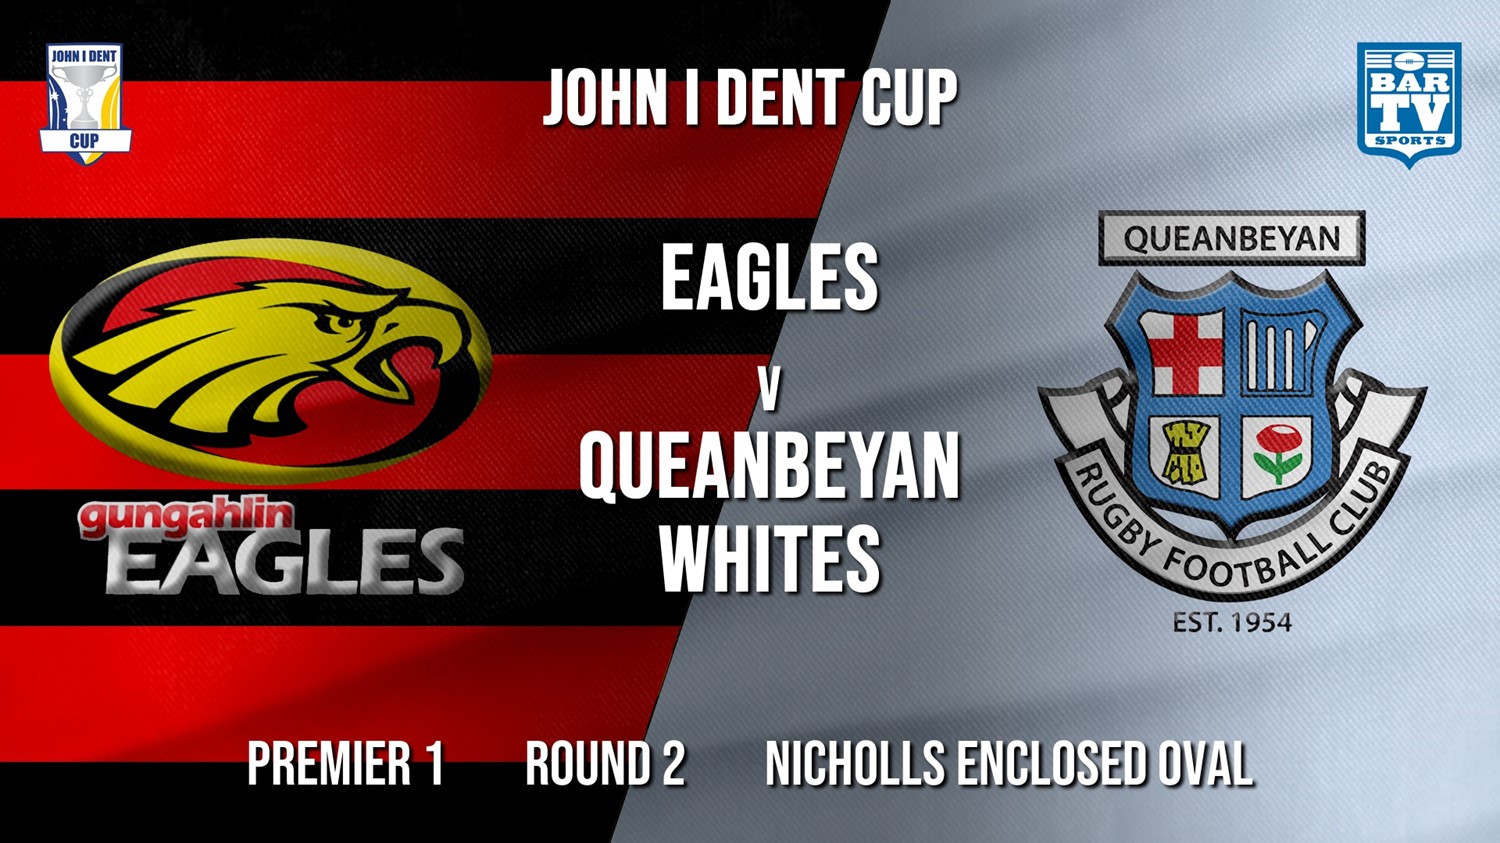 John I Dent Round 2 - Premier 1 - Gungahlin Eagles v Queanbeyan Whites Minigame Slate Image